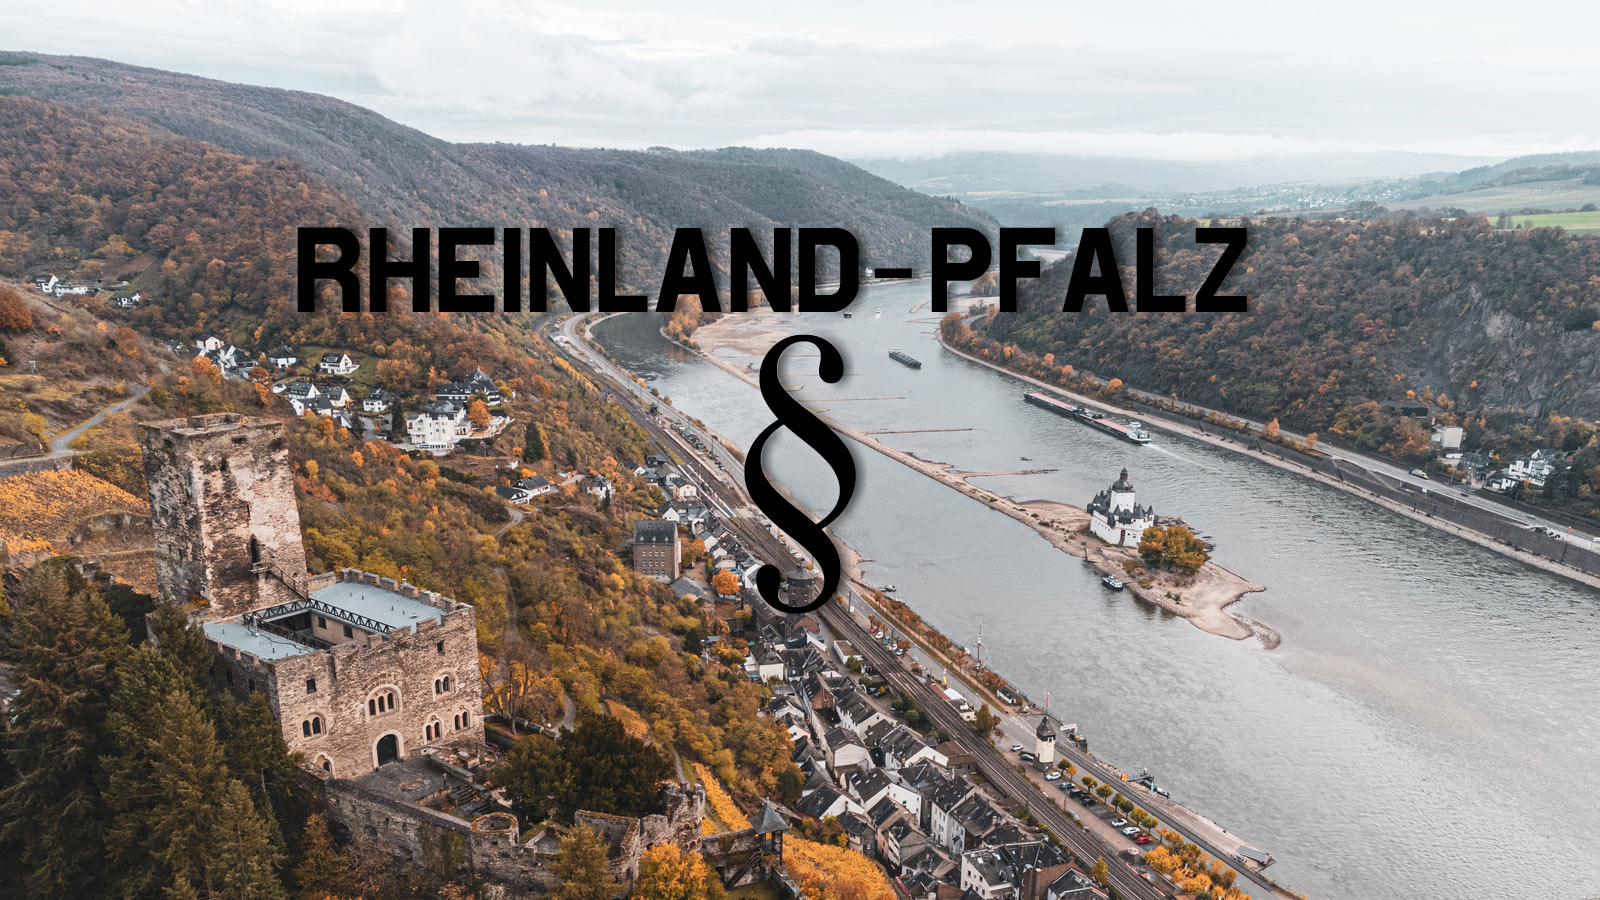 Rheinland-Pfalz: Rechtliche Rahmenbedingungen beim Reitplatzbau